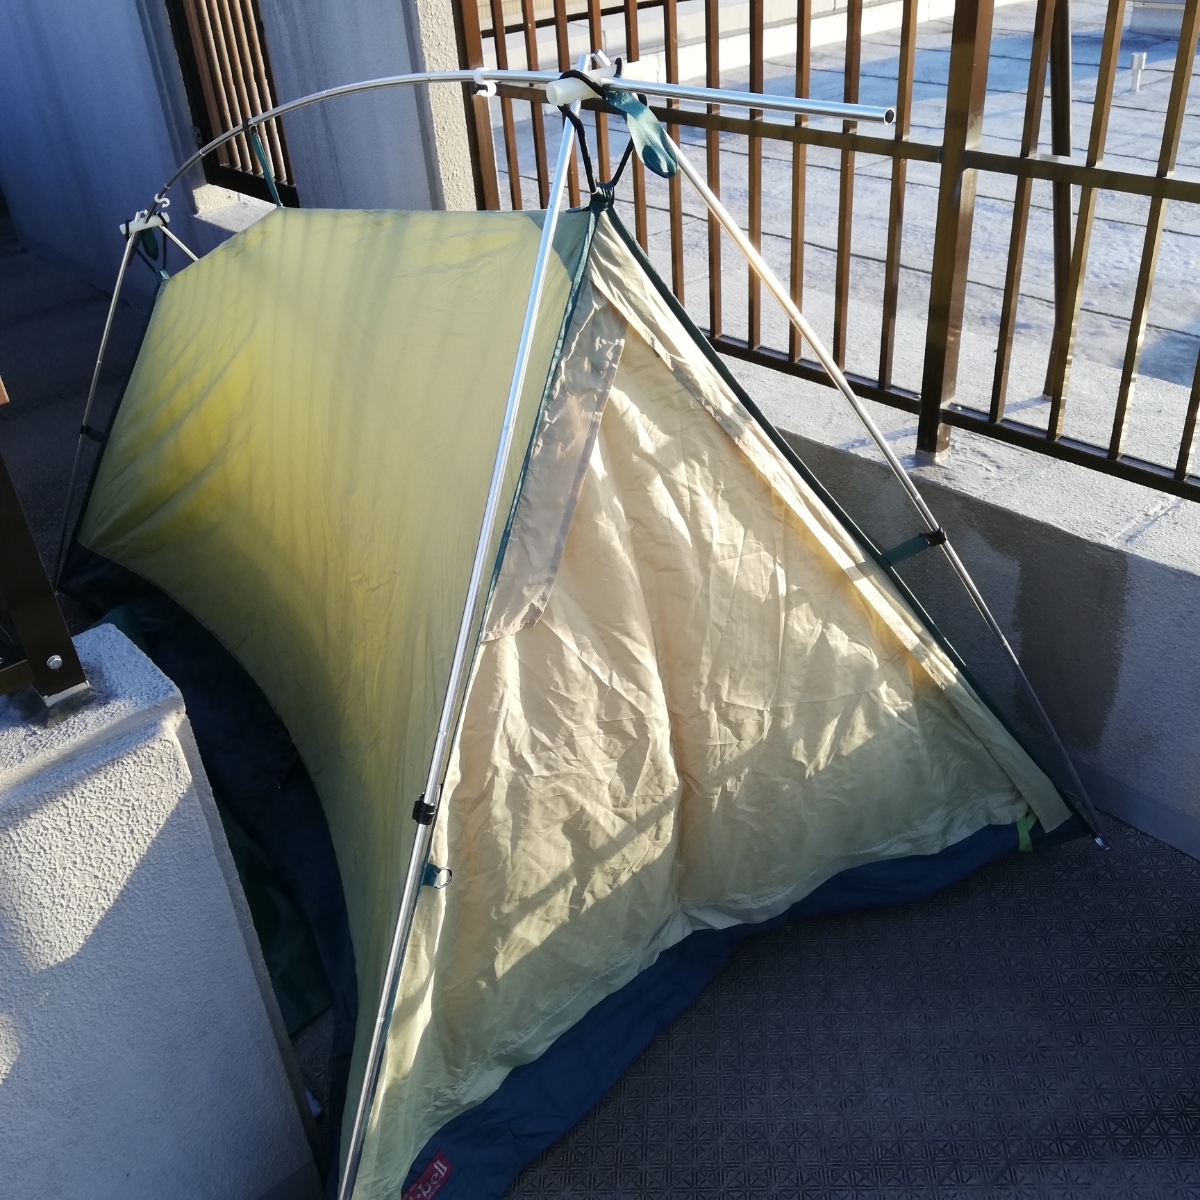 罕見的美麗蒙特貝爾月光帳篷2型象牙白松木鬆散可以獨奏營地，遊覽 原文:希少美品 mont-bell ムーンライトテント2型 アイボリー モンベル ゆるキャン ソロキャンプ、ツーリングに